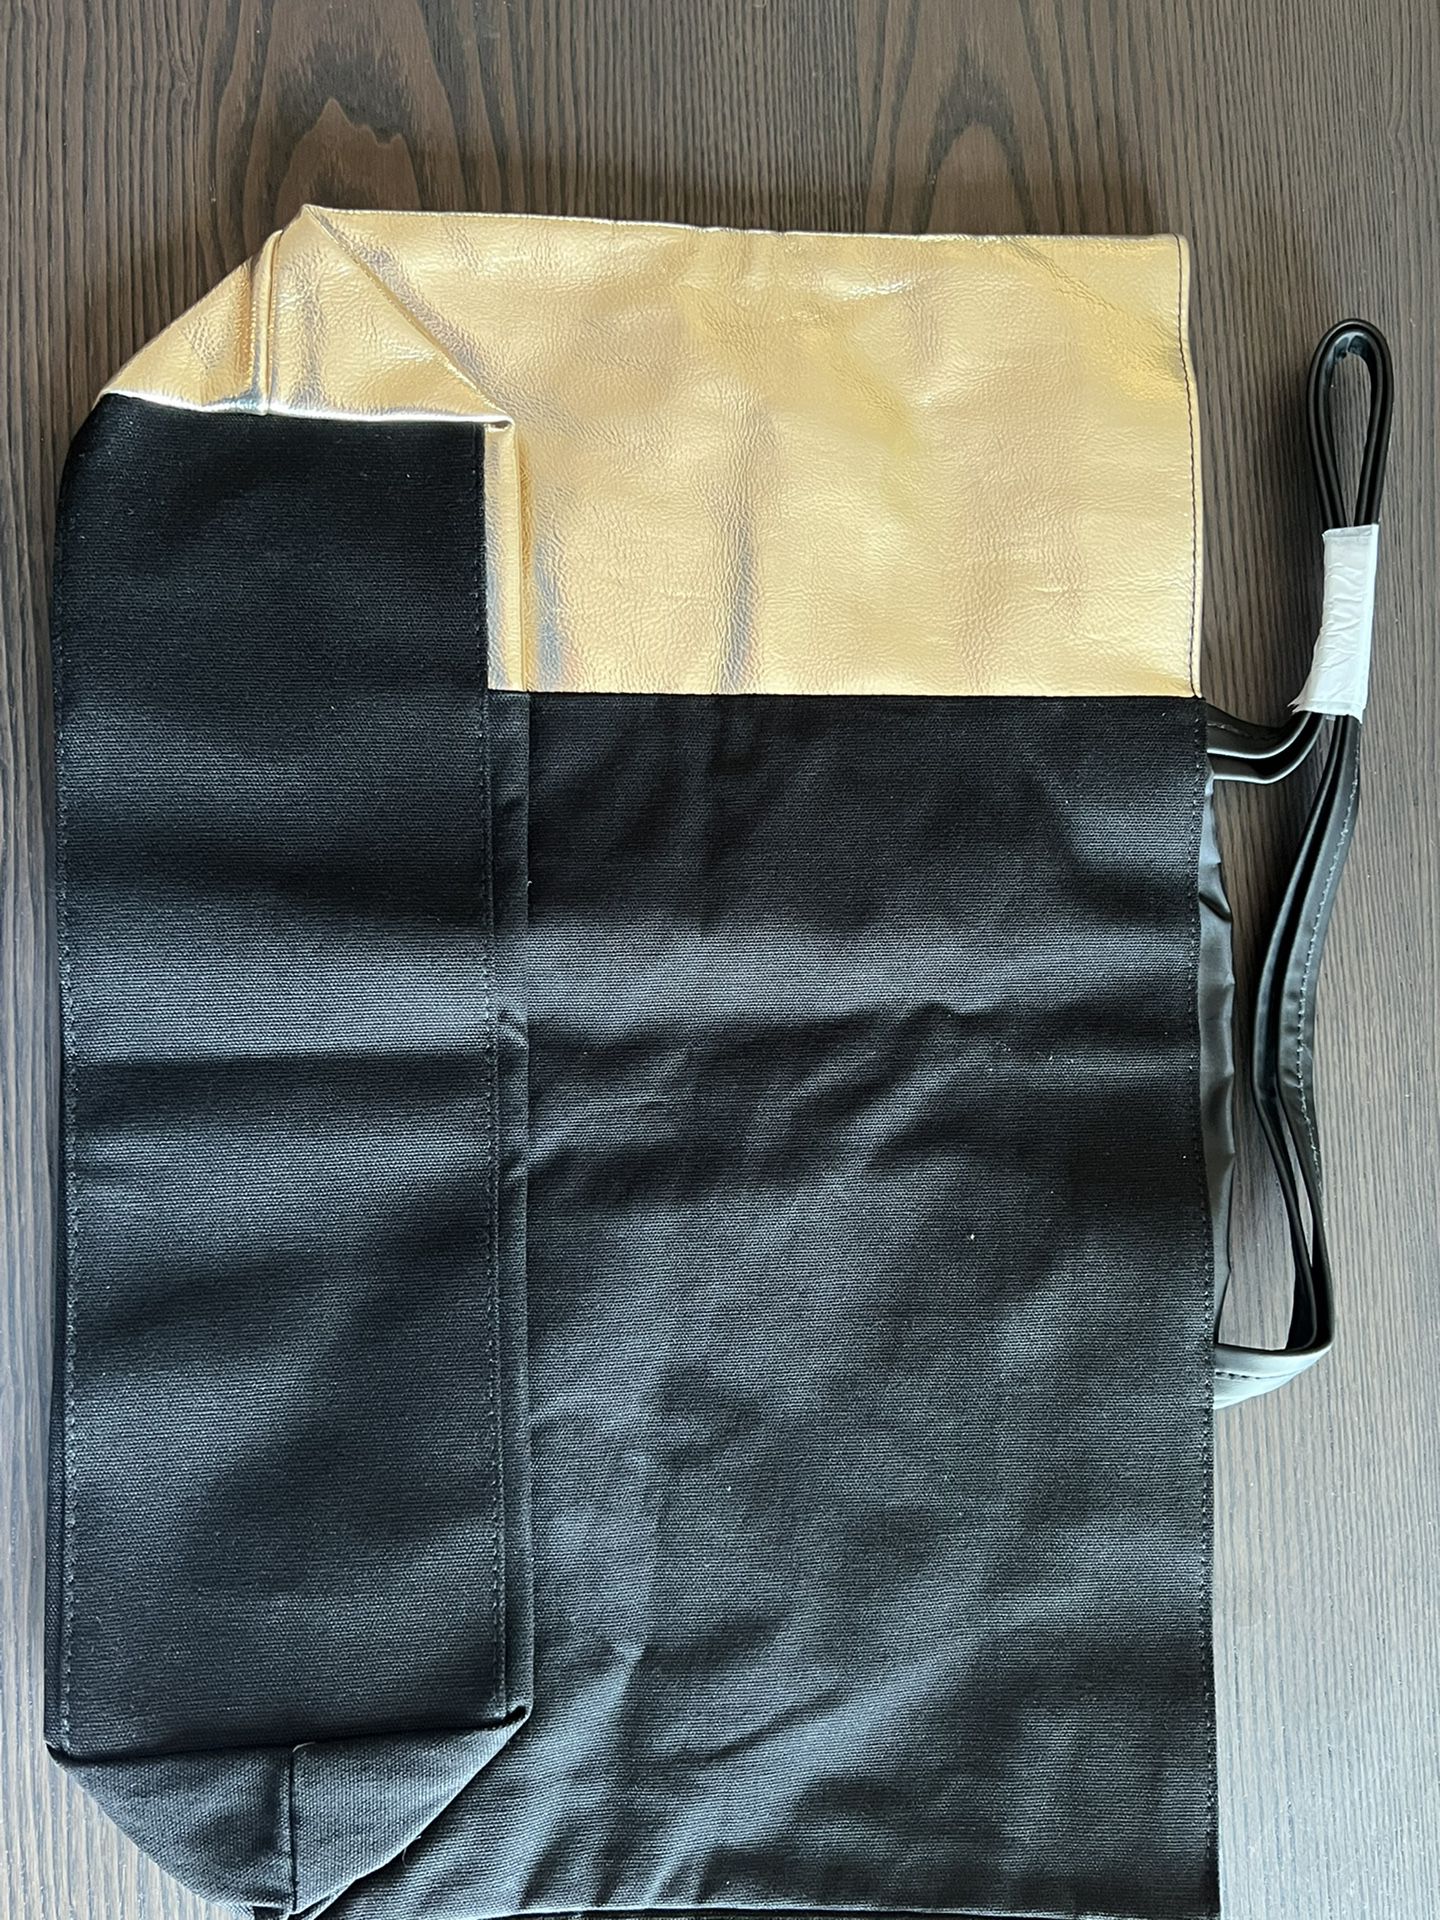 Calvin Klein Tote Bag